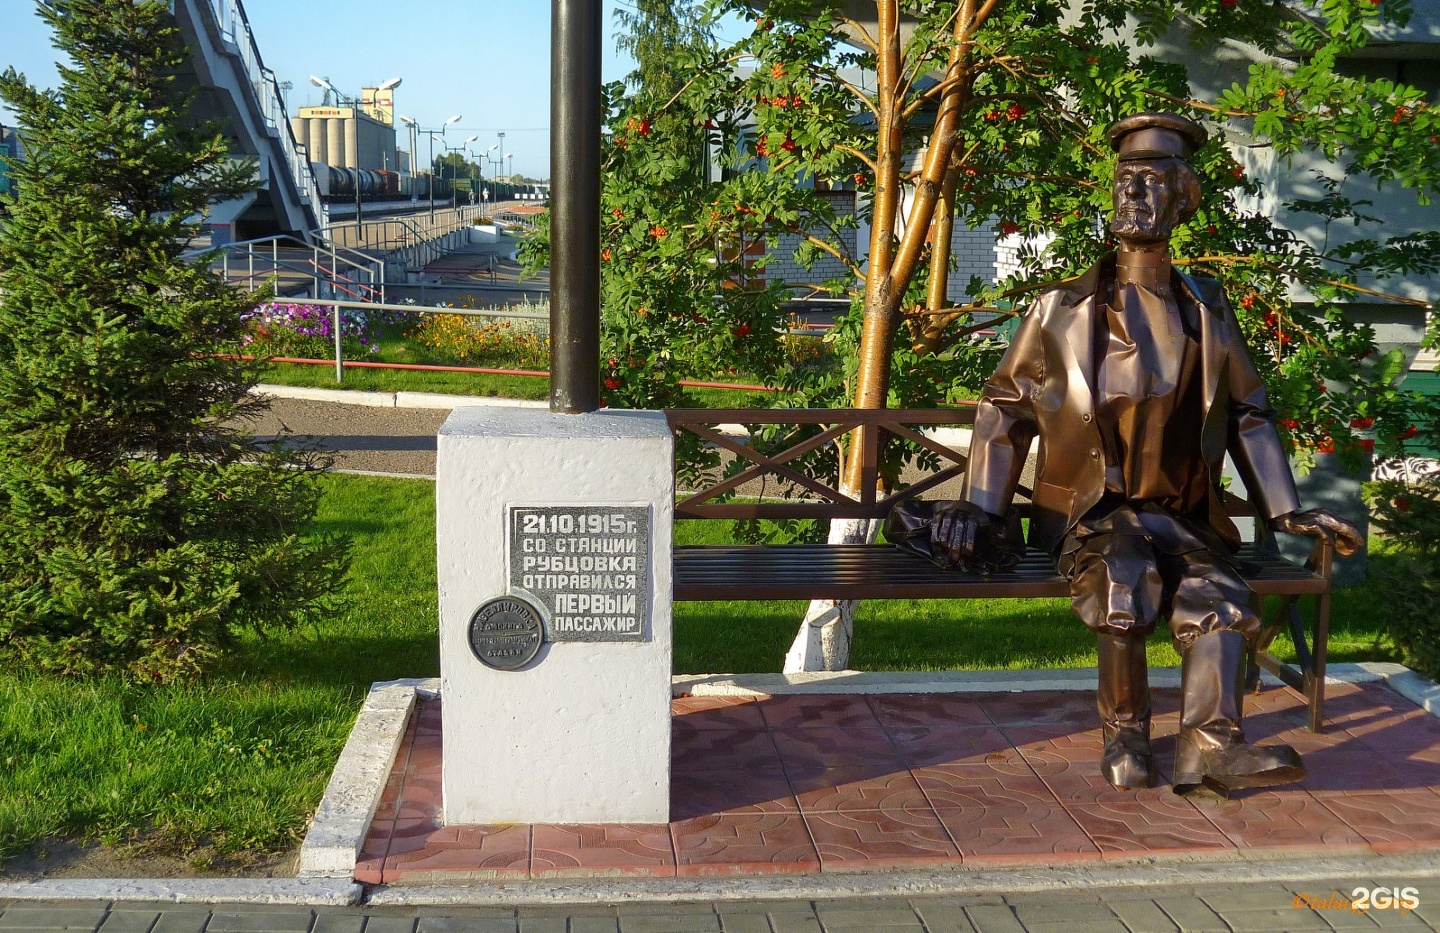 Памятник первому пассажиру Рубцовск